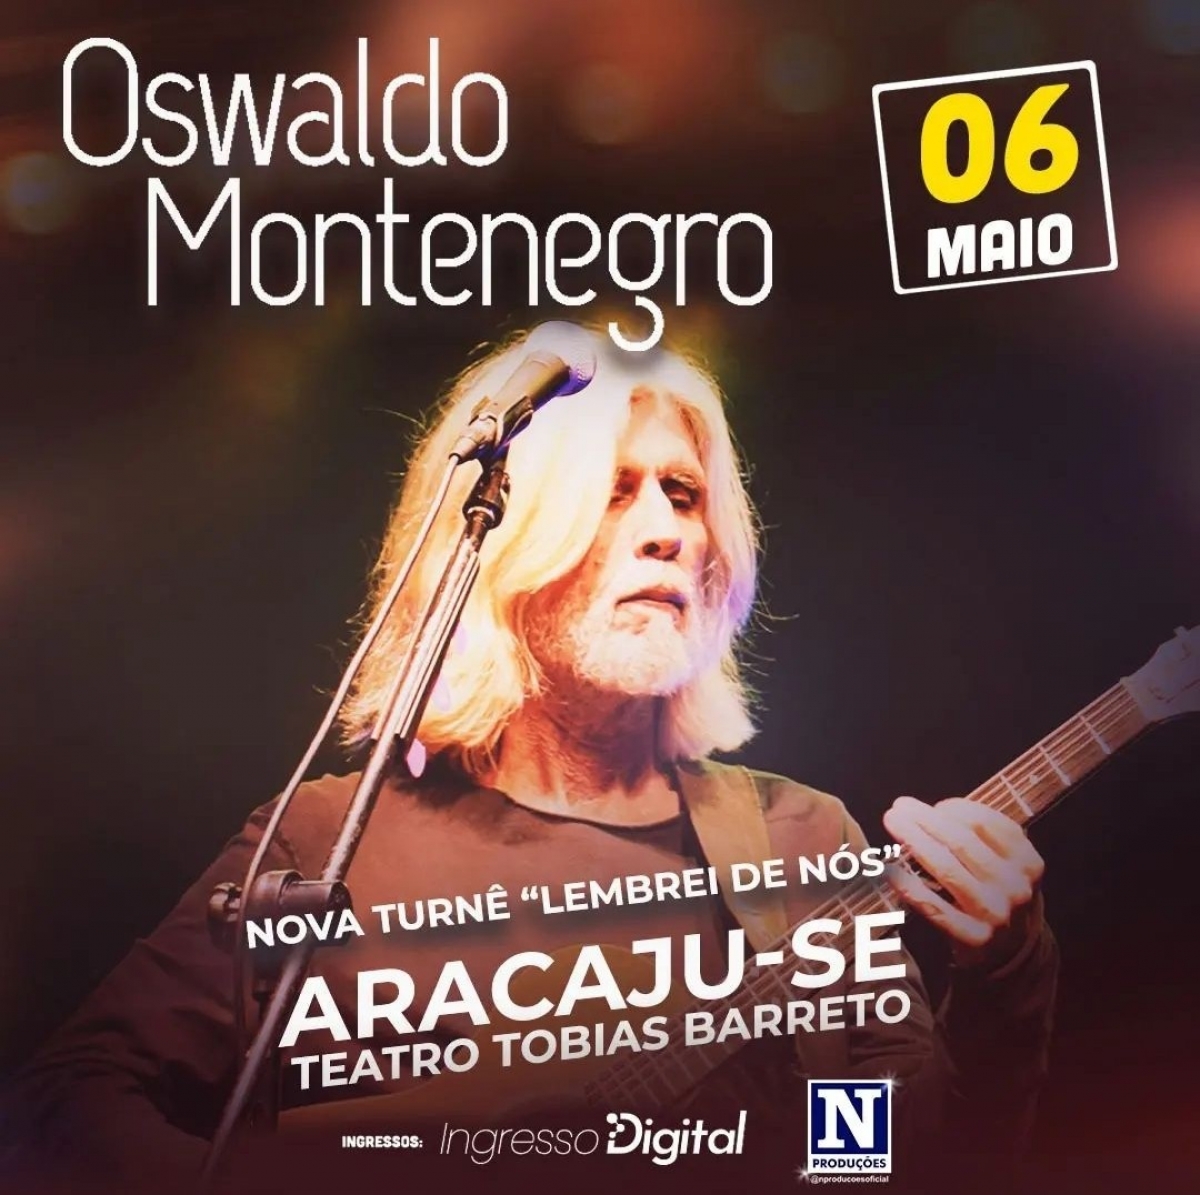 Oswaldo Montenegro - Nova turnê "Lembrei de Nós" (Imagem: Divulgação)